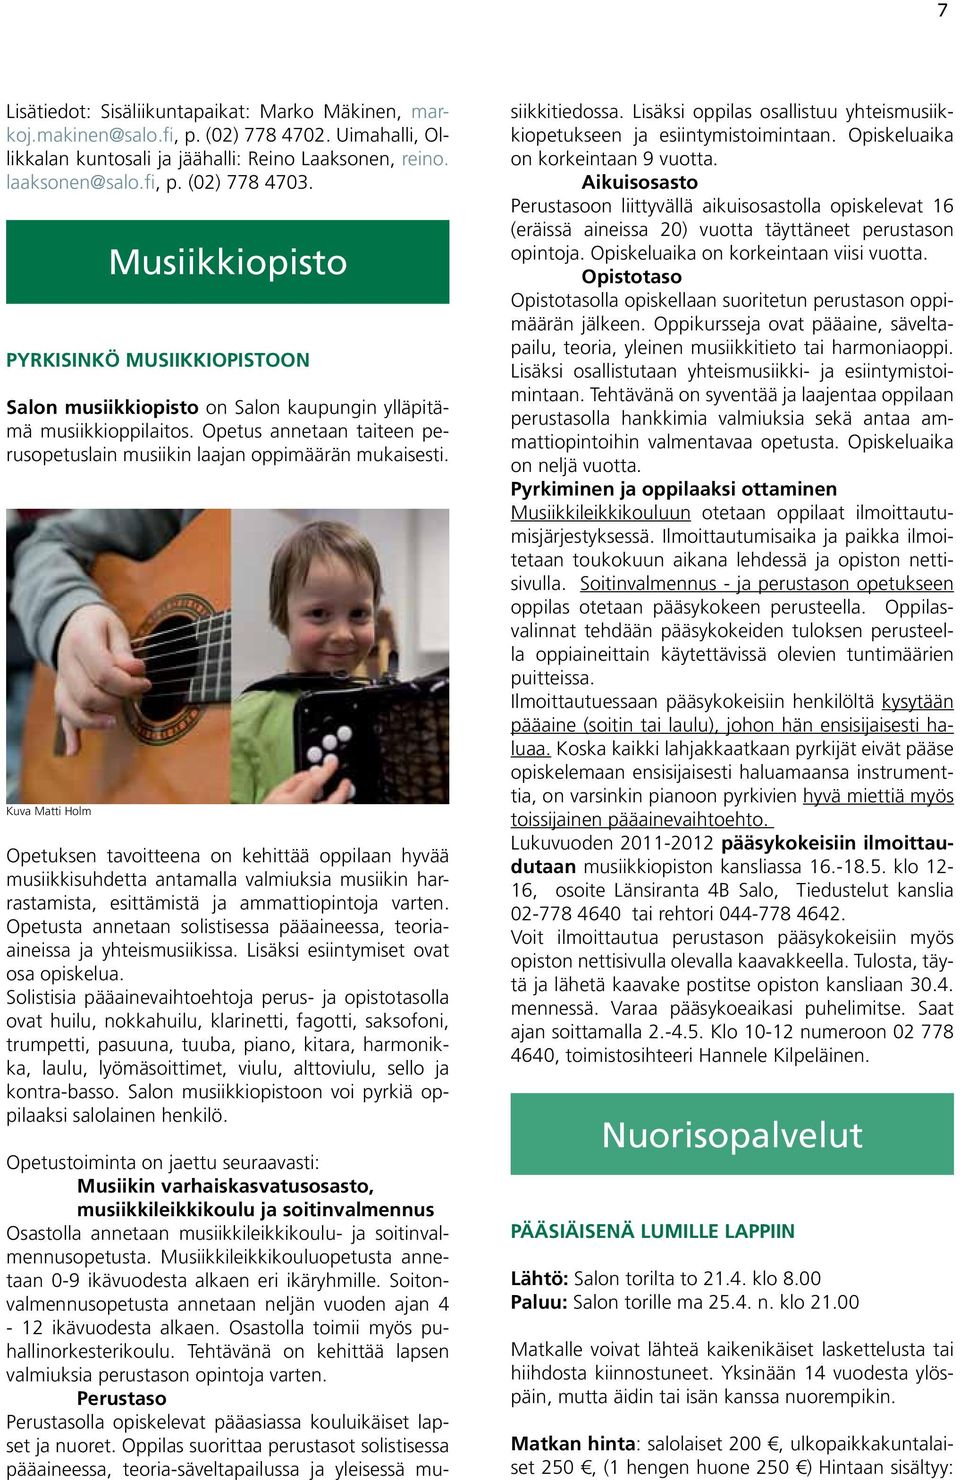 Kuva Matti Holm Opetuksen tavoitteena on kehittää oppilaan hyvää musiikkisuhdetta antamalla valmiuksia musiikin harrastamista, esittämistä ja ammattiopintoja varten.